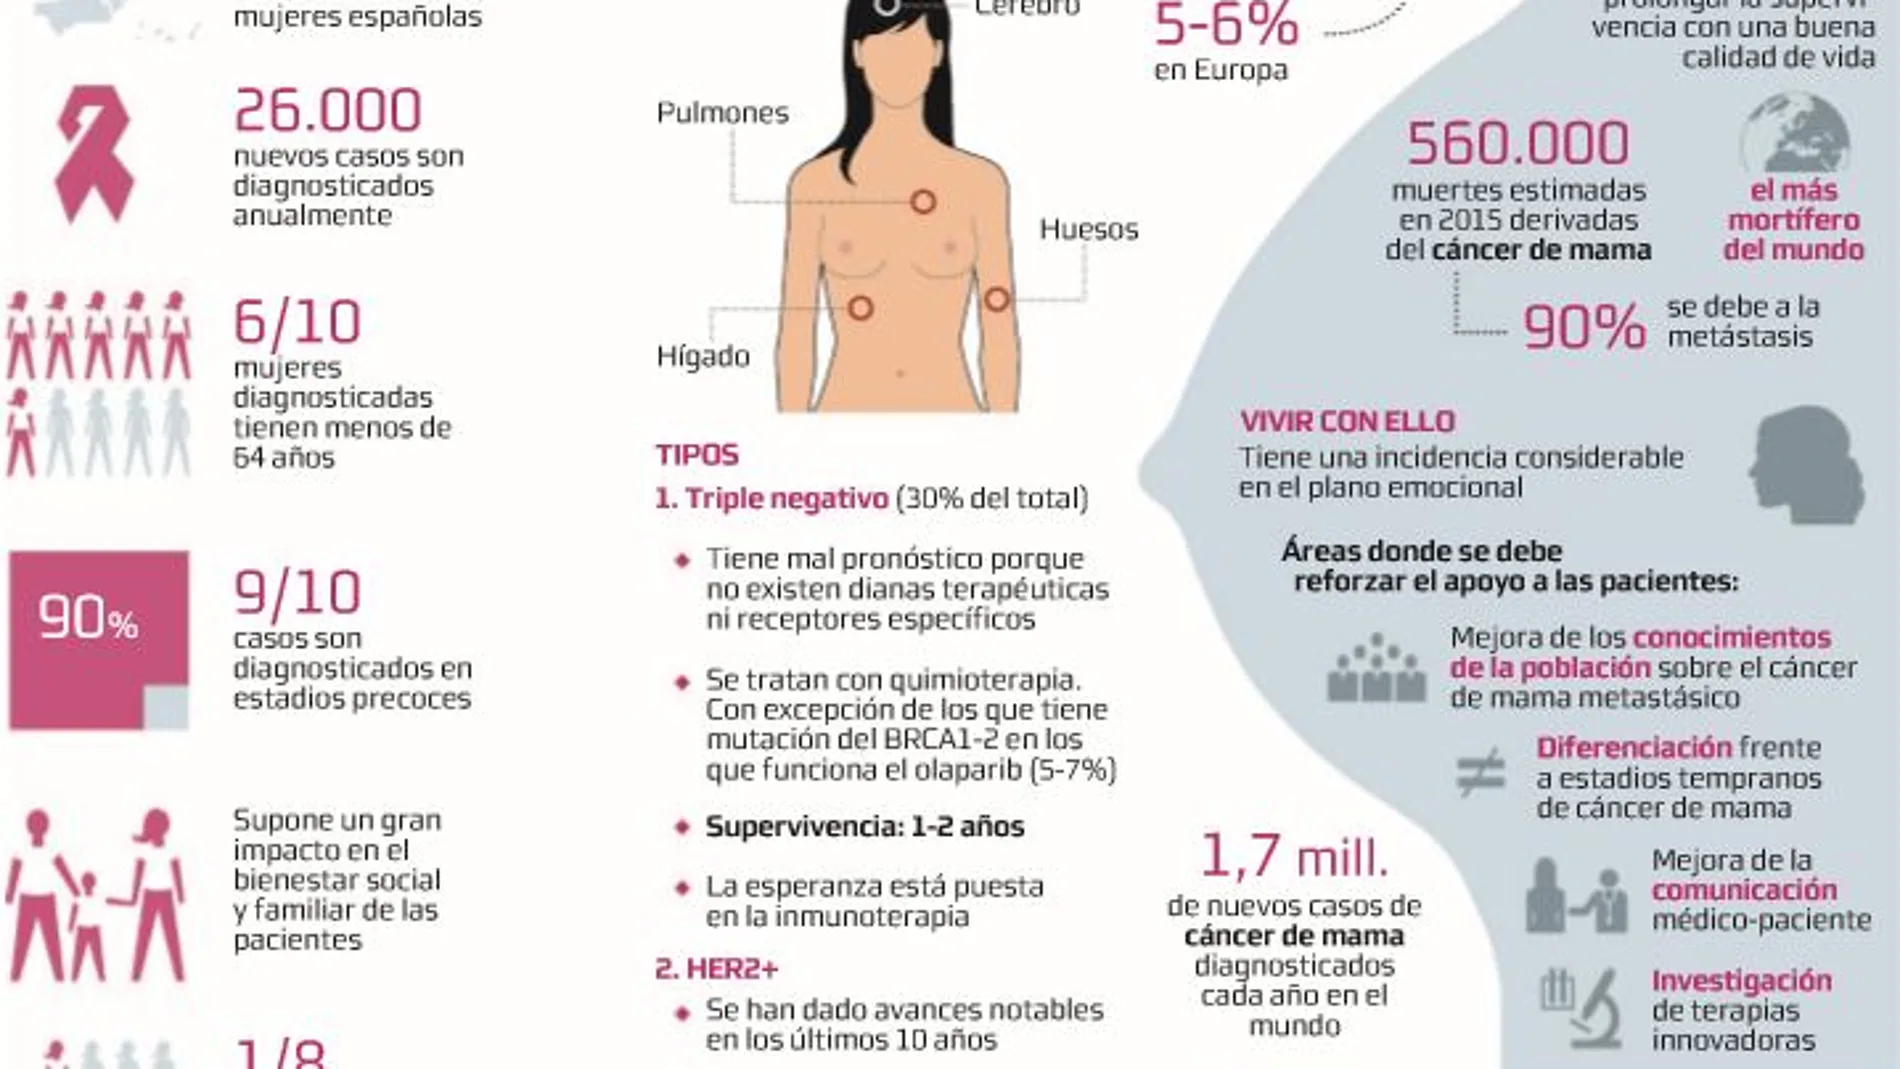 Cáncer de mama metastásico: La oncología se enfrenta al reto de las largas supervivientes